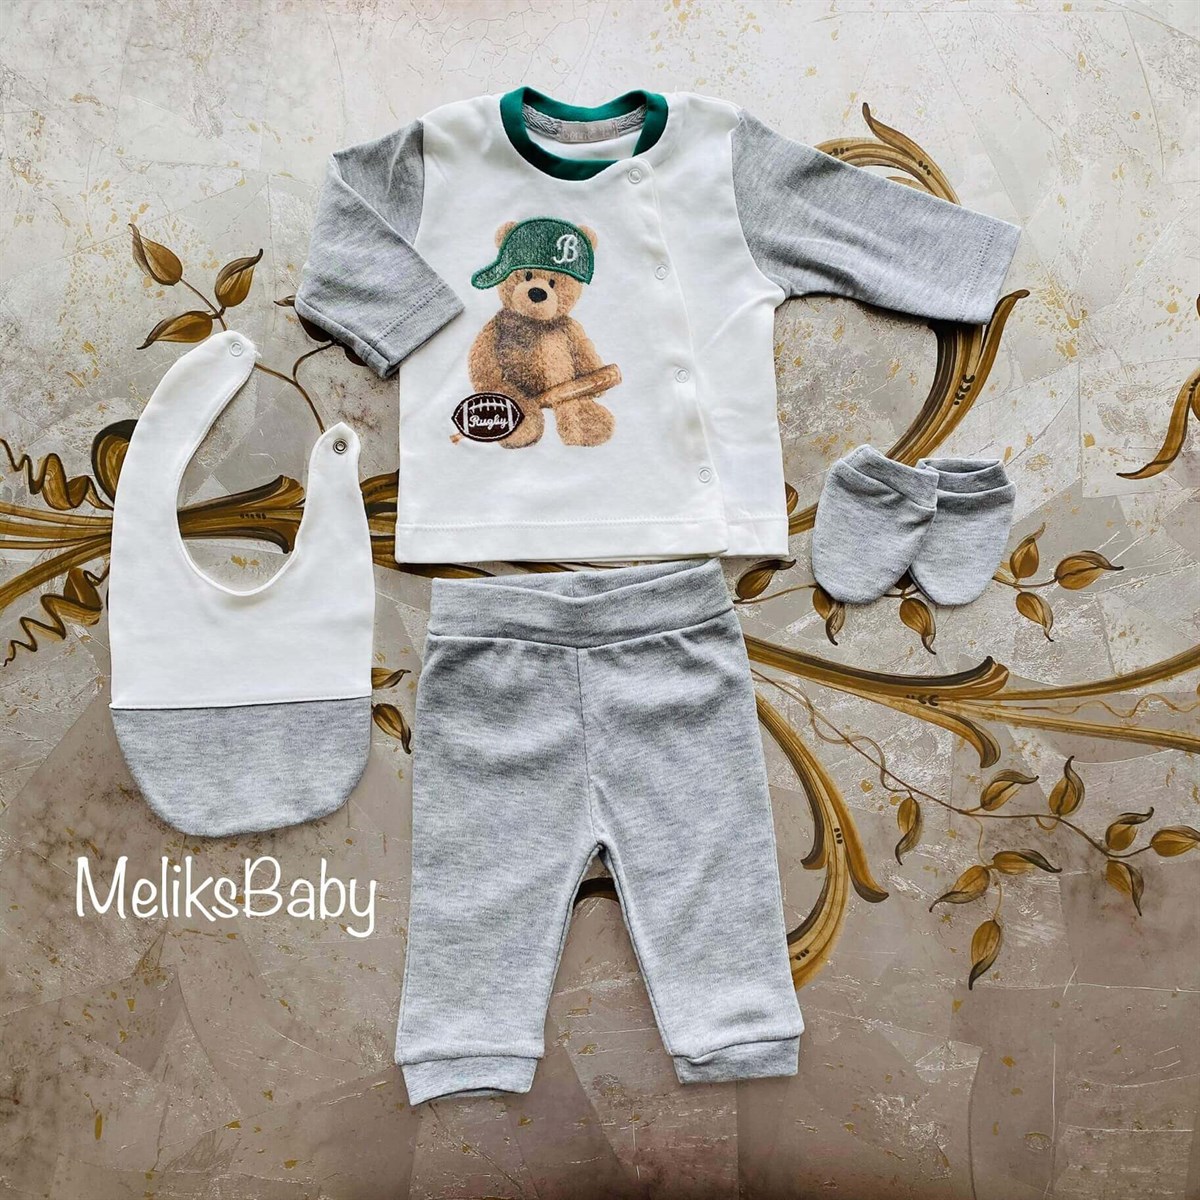 Meliks BABY ; En kaliteli Bebek Kıyafetleri